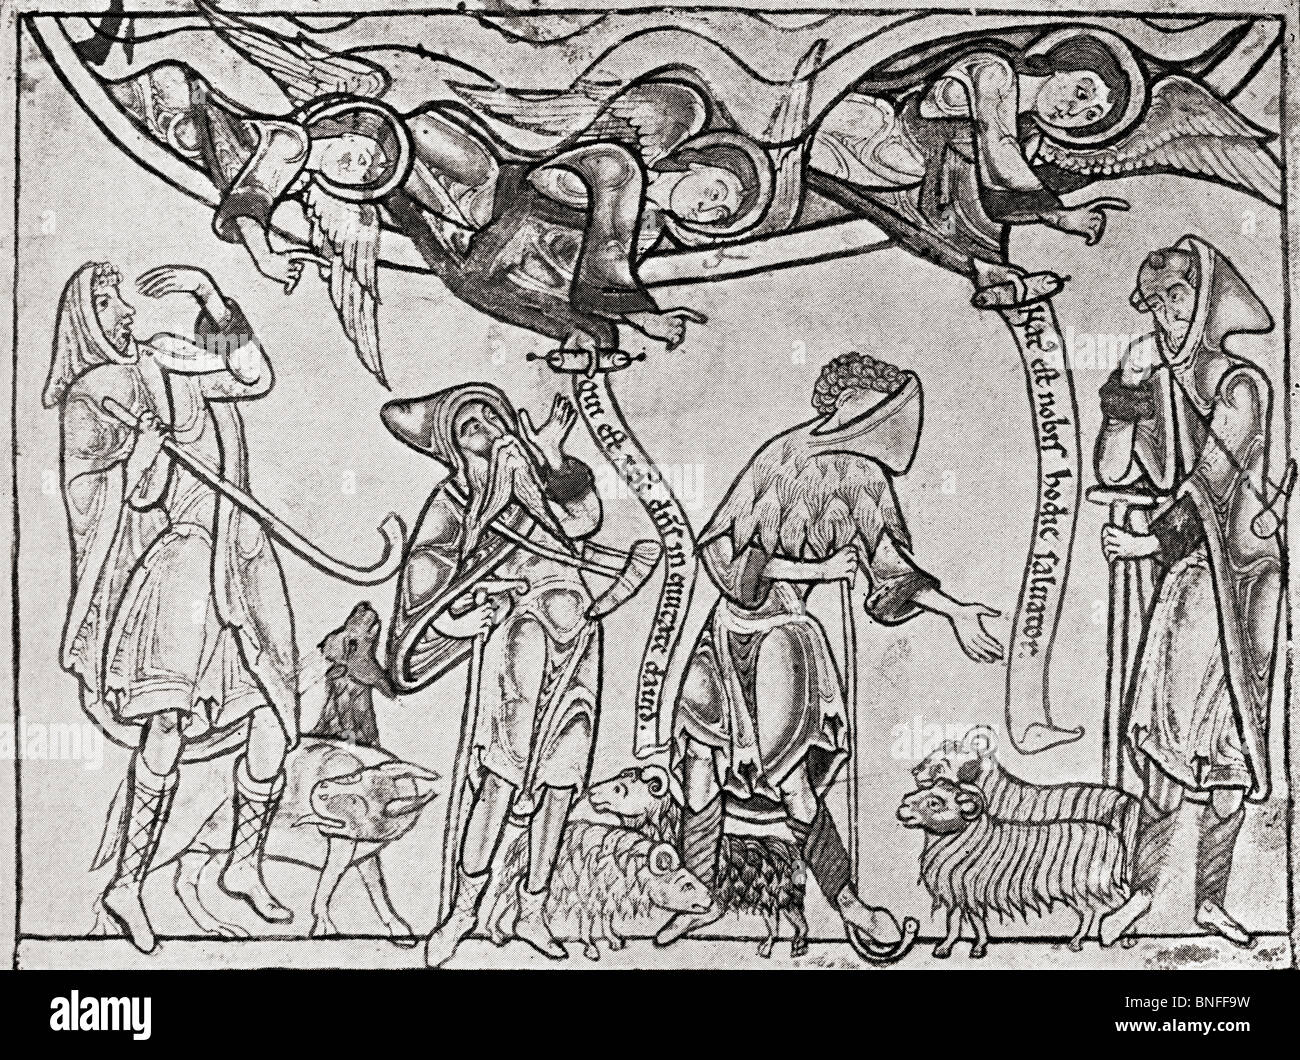 Les bergers dans le moyen âge. Illustration de l'album Le Connaisseur illustré publié en 1904. Banque D'Images